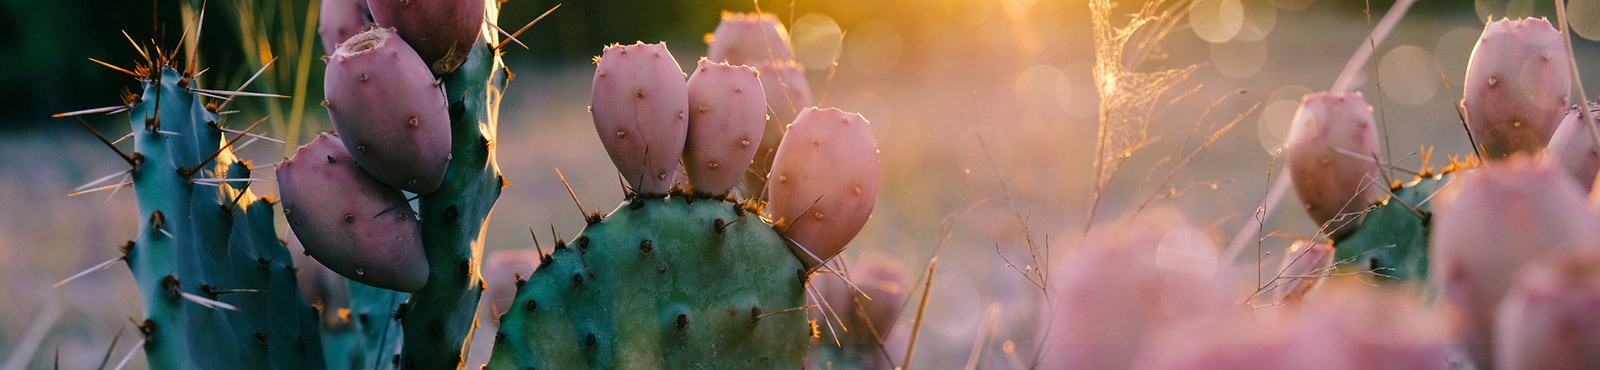 Cactus close up.